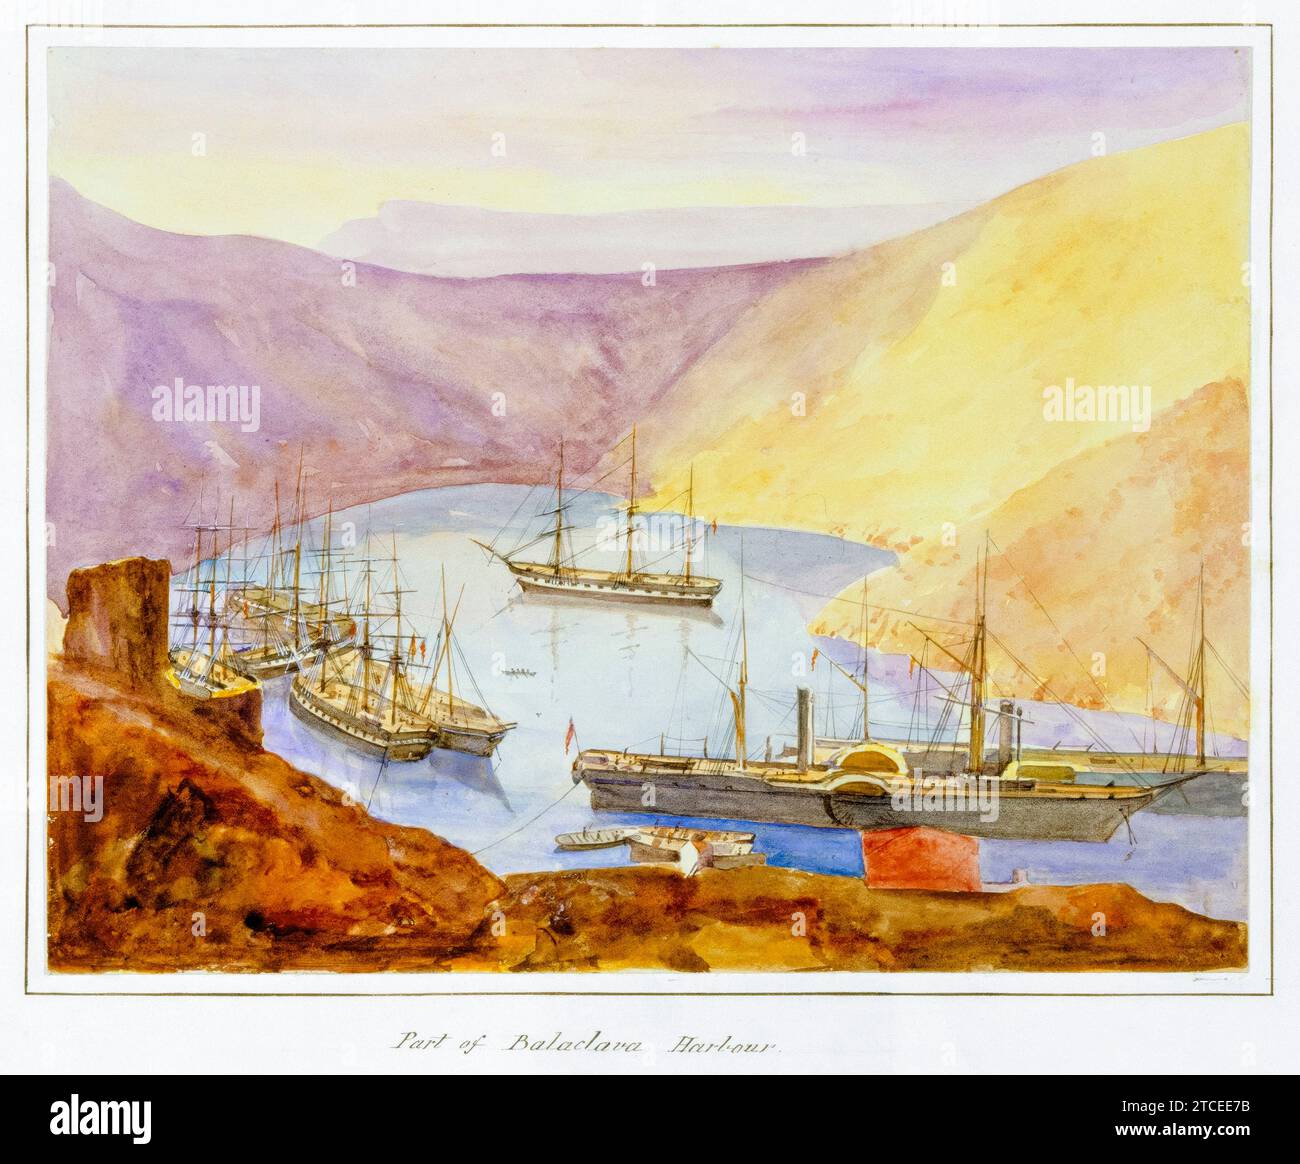 Port de Balaclava Harbour, de la série 'Crimea', tirage photographique à l'albumen coloré à la main par James Robertson, 1855 Banque D'Images